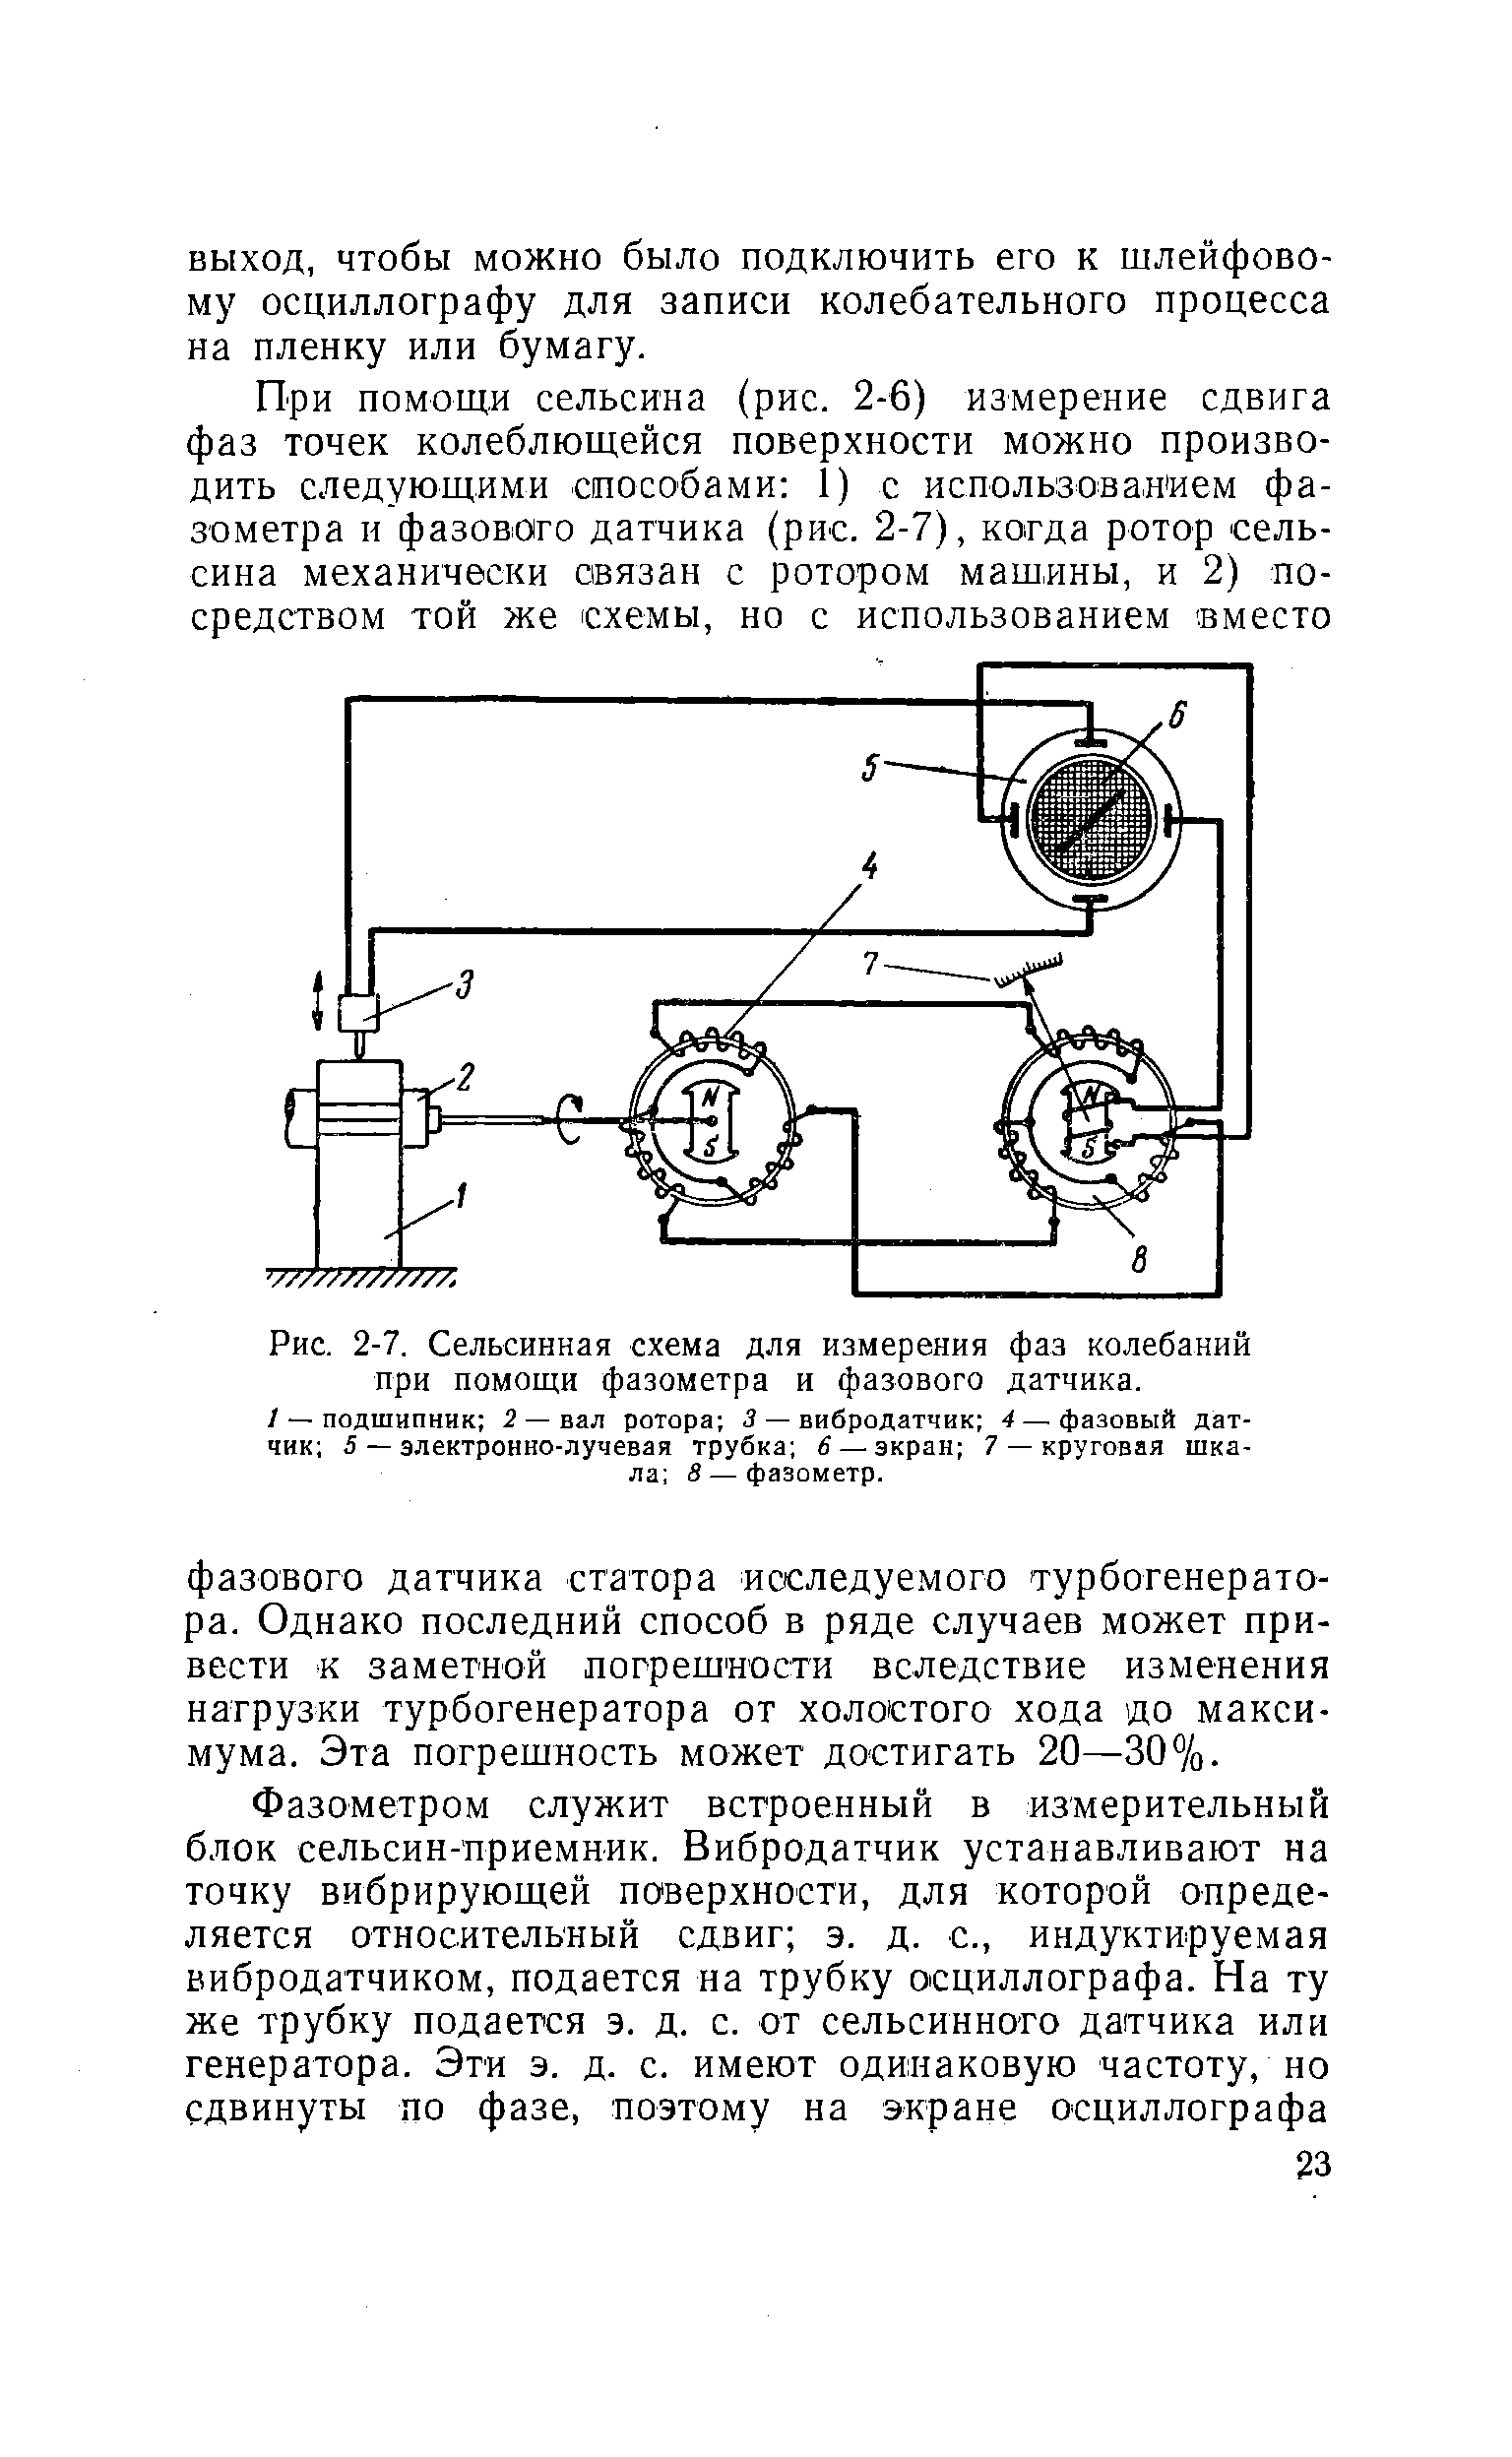 Рис. 2-7. Сельсинная схема для измерения фаз колебаний при помощи фазометра и фазового датчика.
